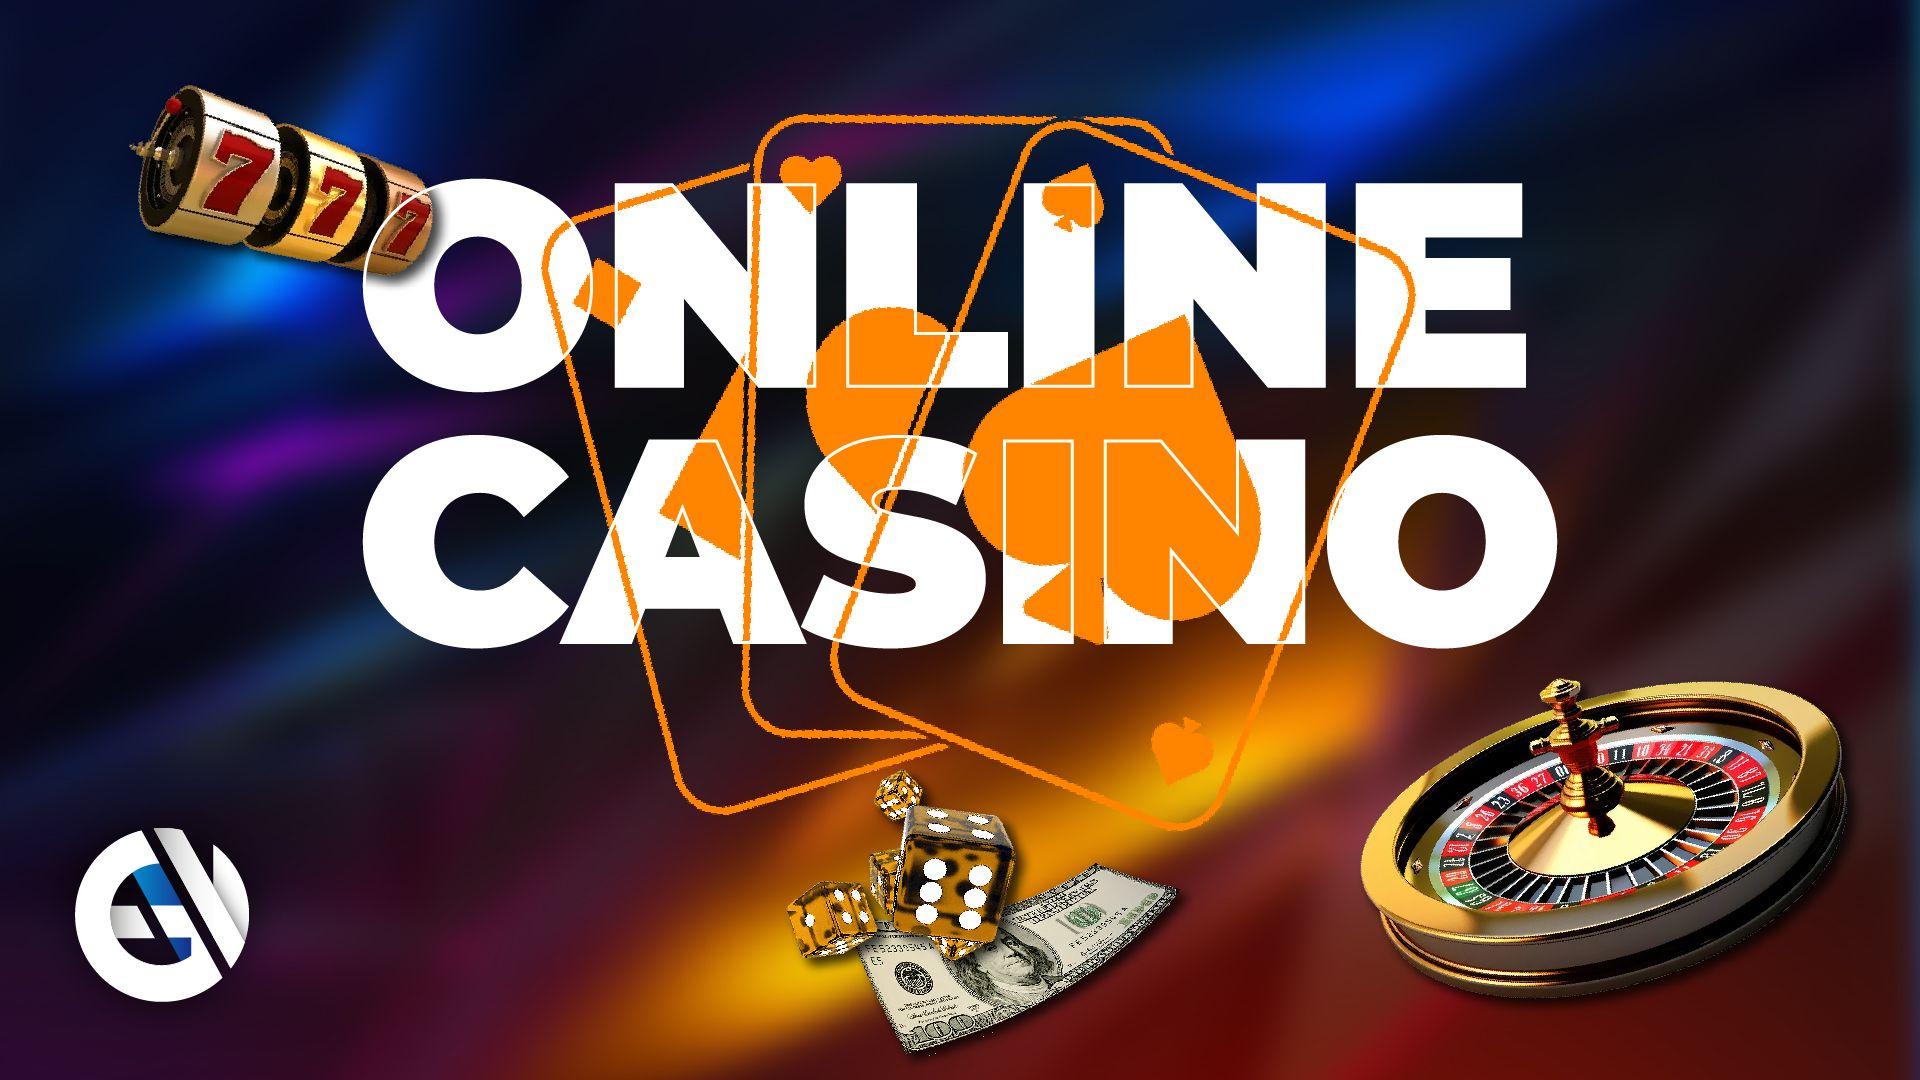 Grywalizacja - wzrost popularności grywalizacji w kasynach online